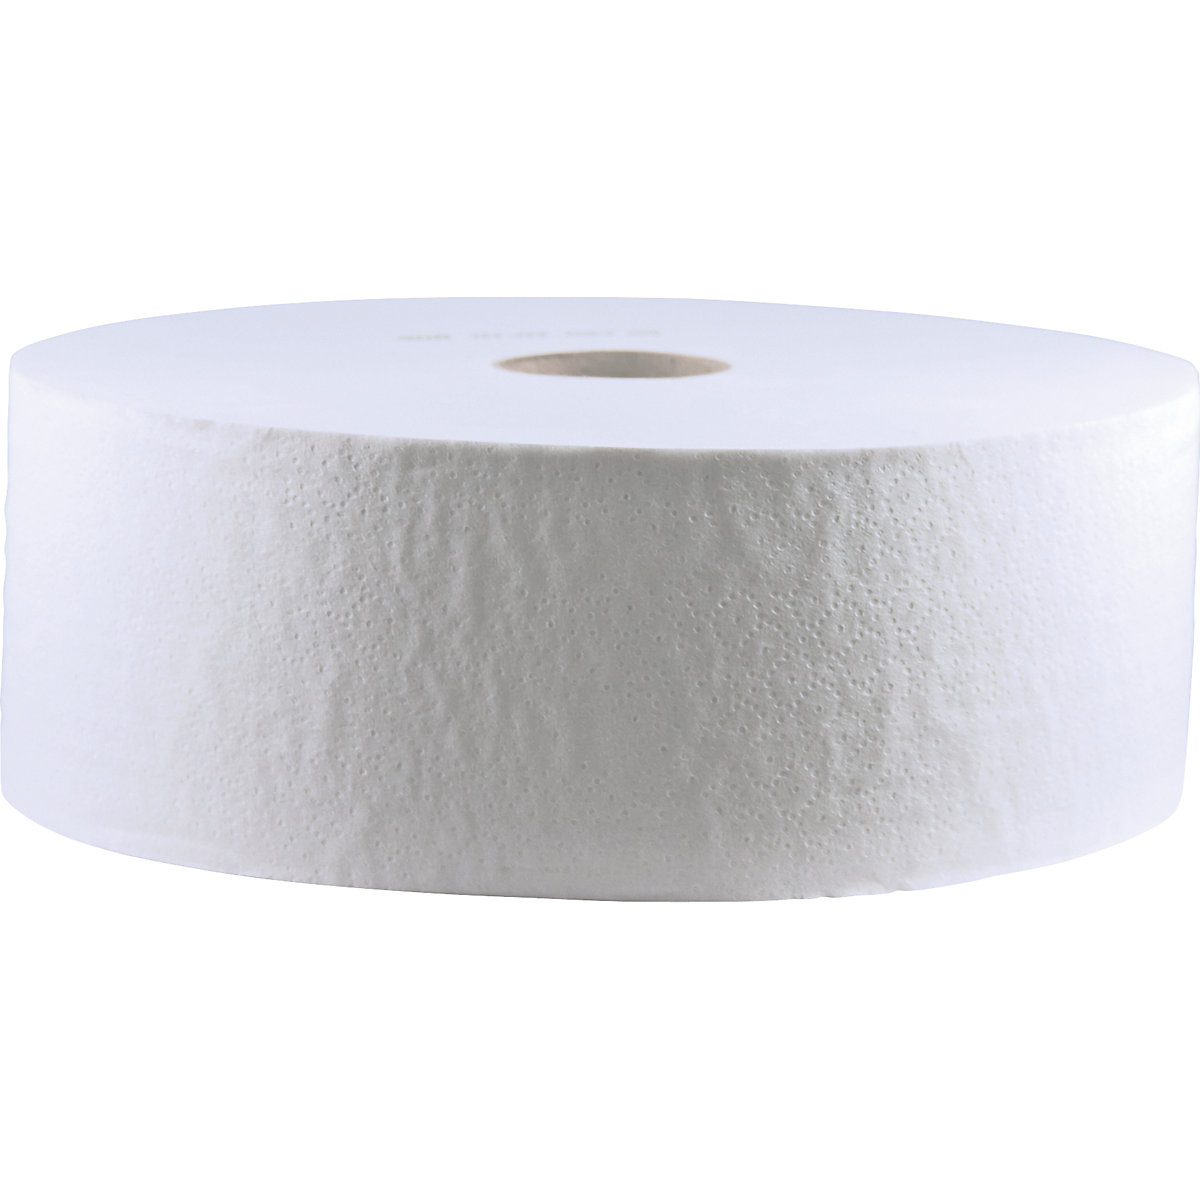 Toaletný papier, veľké kotúče Tissue – CWS